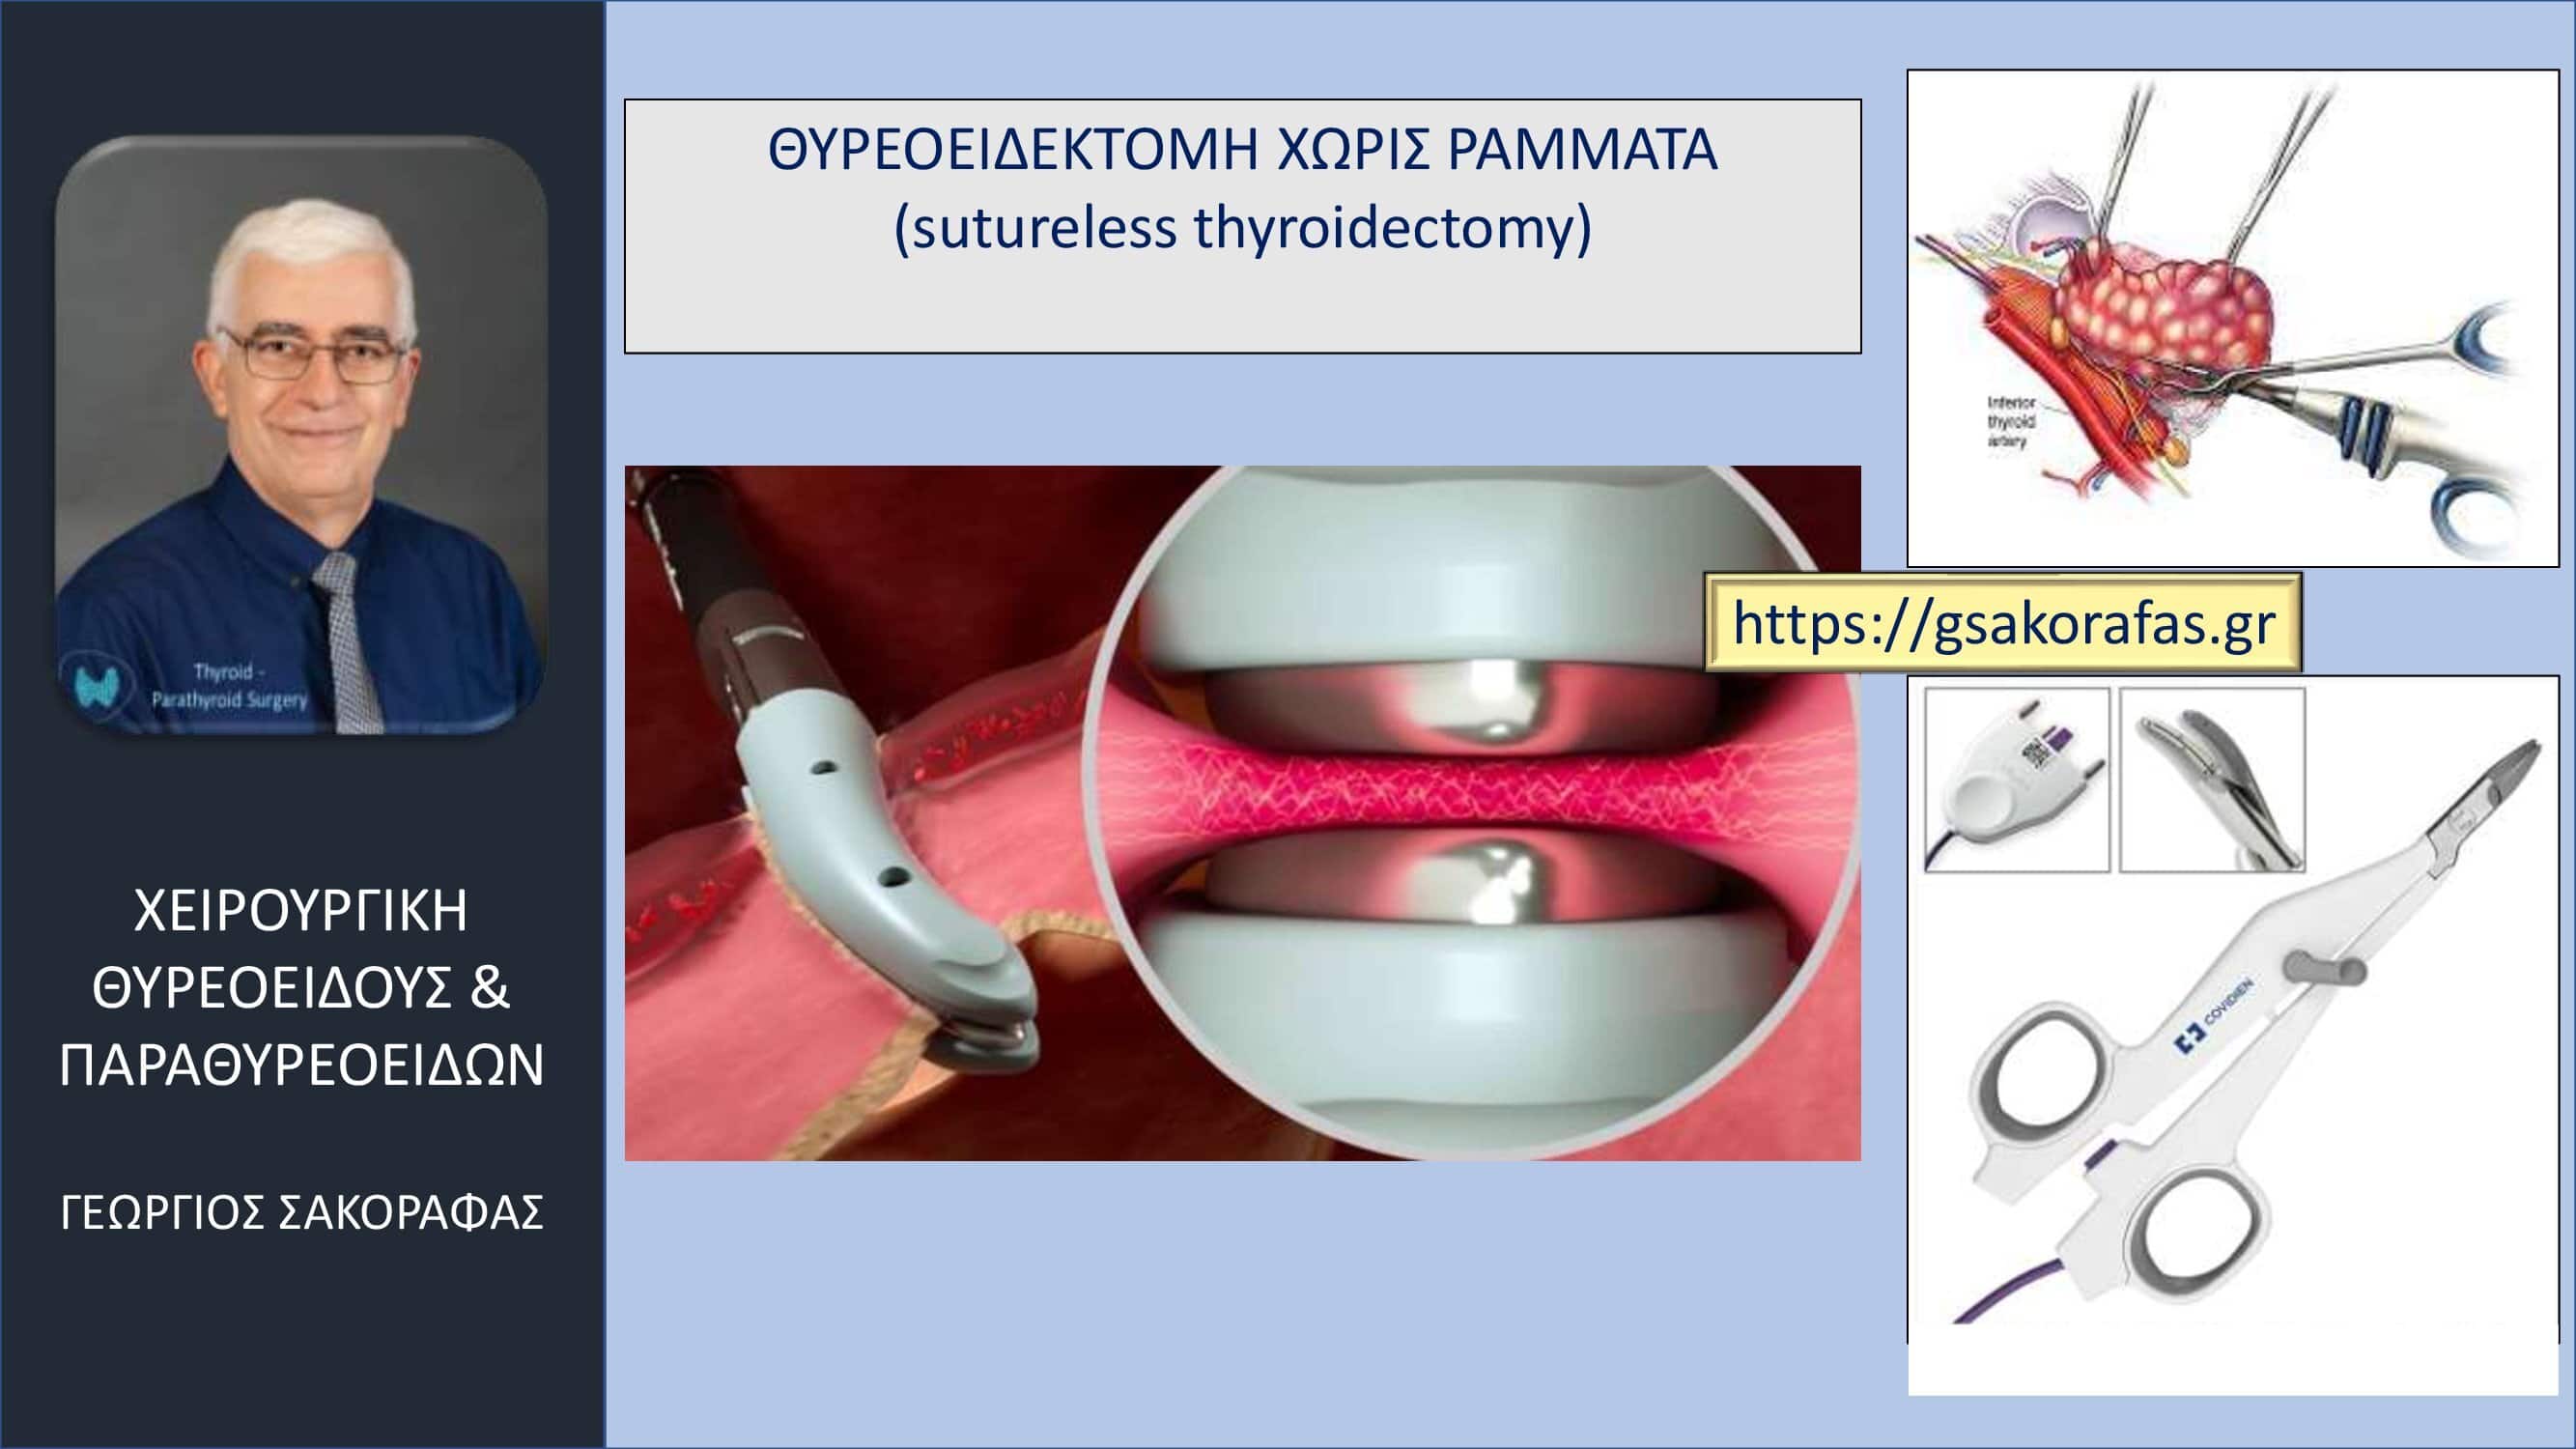 Χωρίς ράμματα θυρεοειδεκτομή (suture-less thyroidectomy) – σημαντικά μειωμένος μετεγχειρητικός πόνος (και κάποια άλλα πλεονεκτήματα)